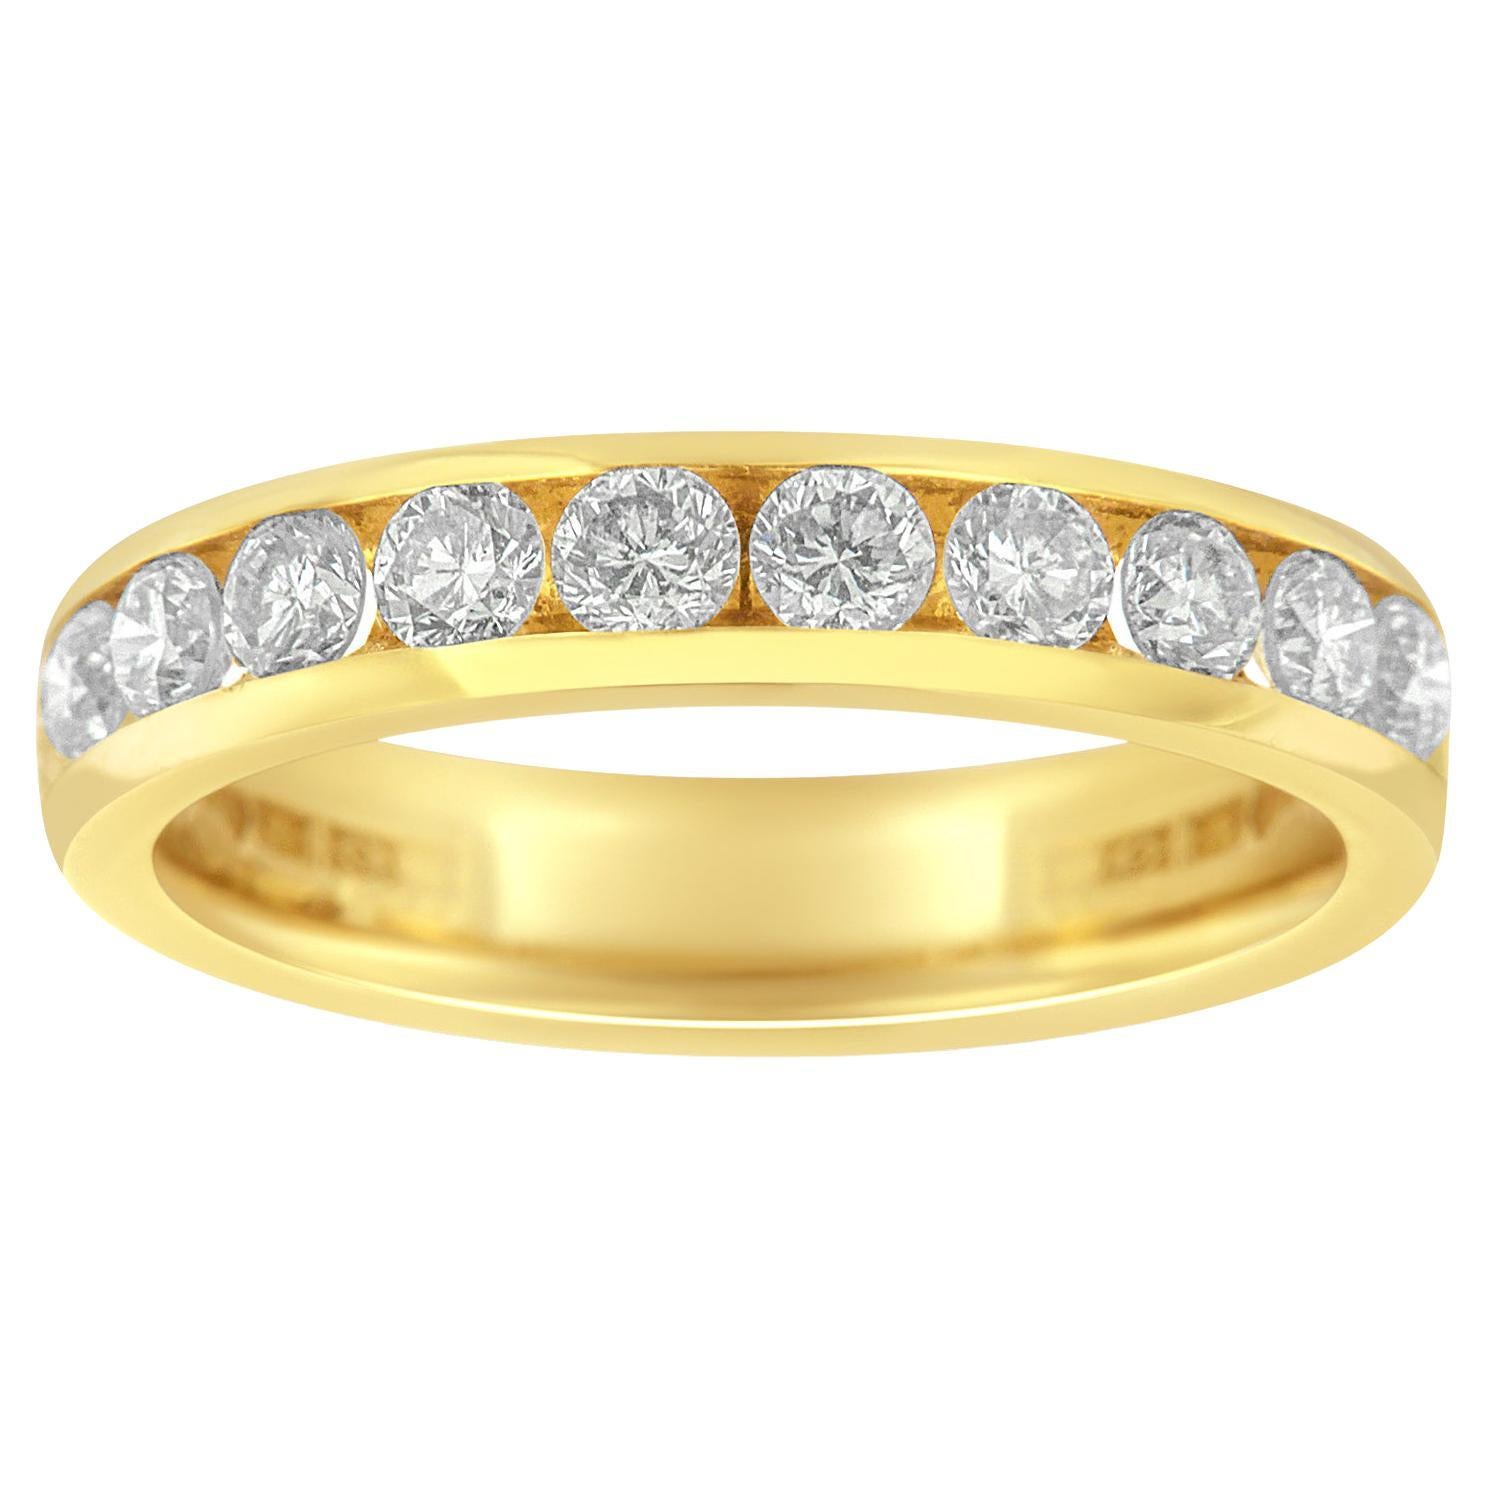 18K Yellow Gold 1.00 Carat Diamond Wedding Band Ring